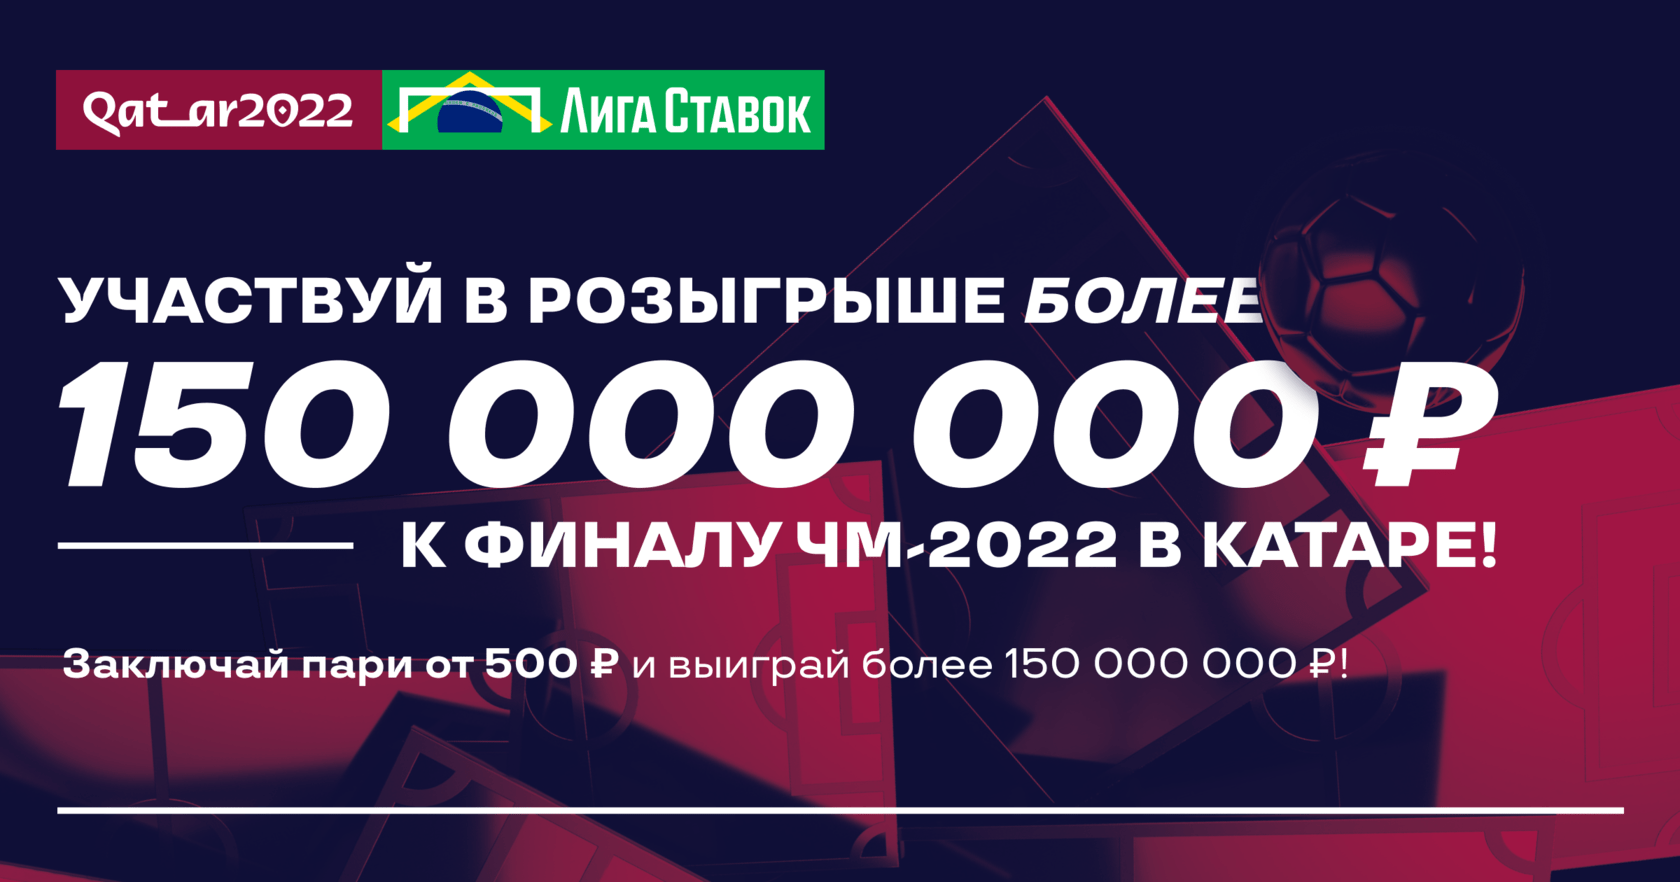 BK Liga Stavok razygryvaet bolee 150 000 000 rublej k finalu CHM 2022